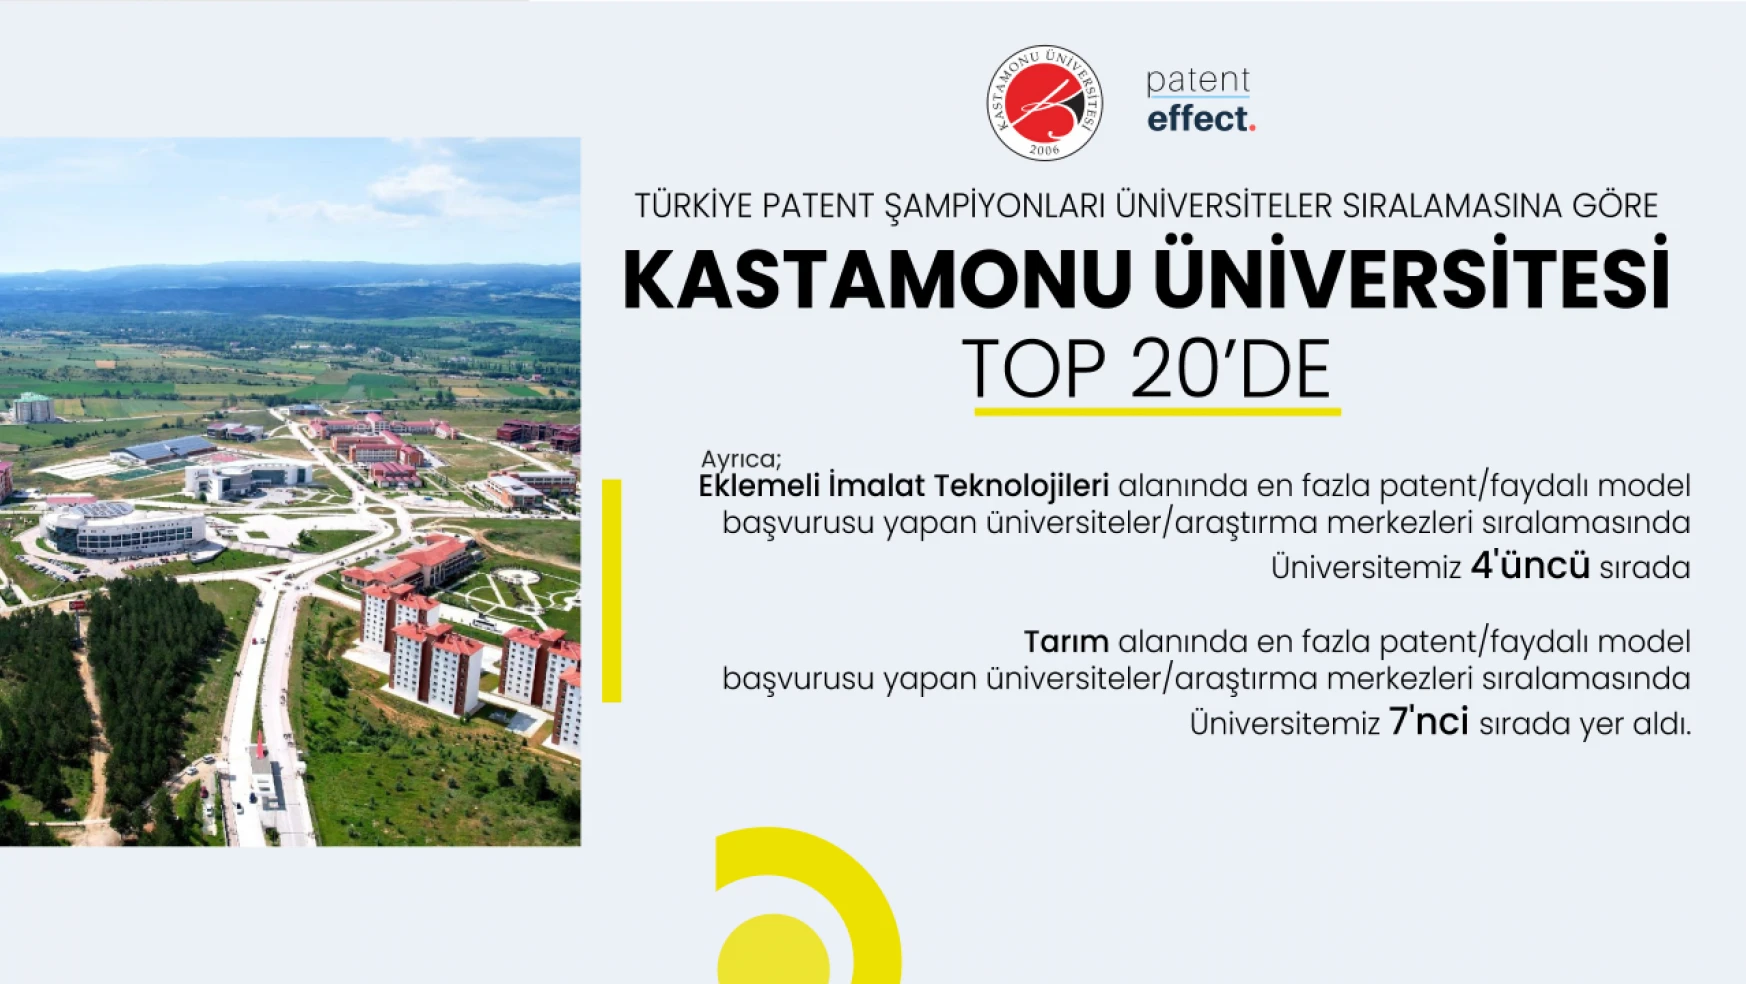 Kastamonu Üniversitesi Patent Şampiyonları Arasına Girdi